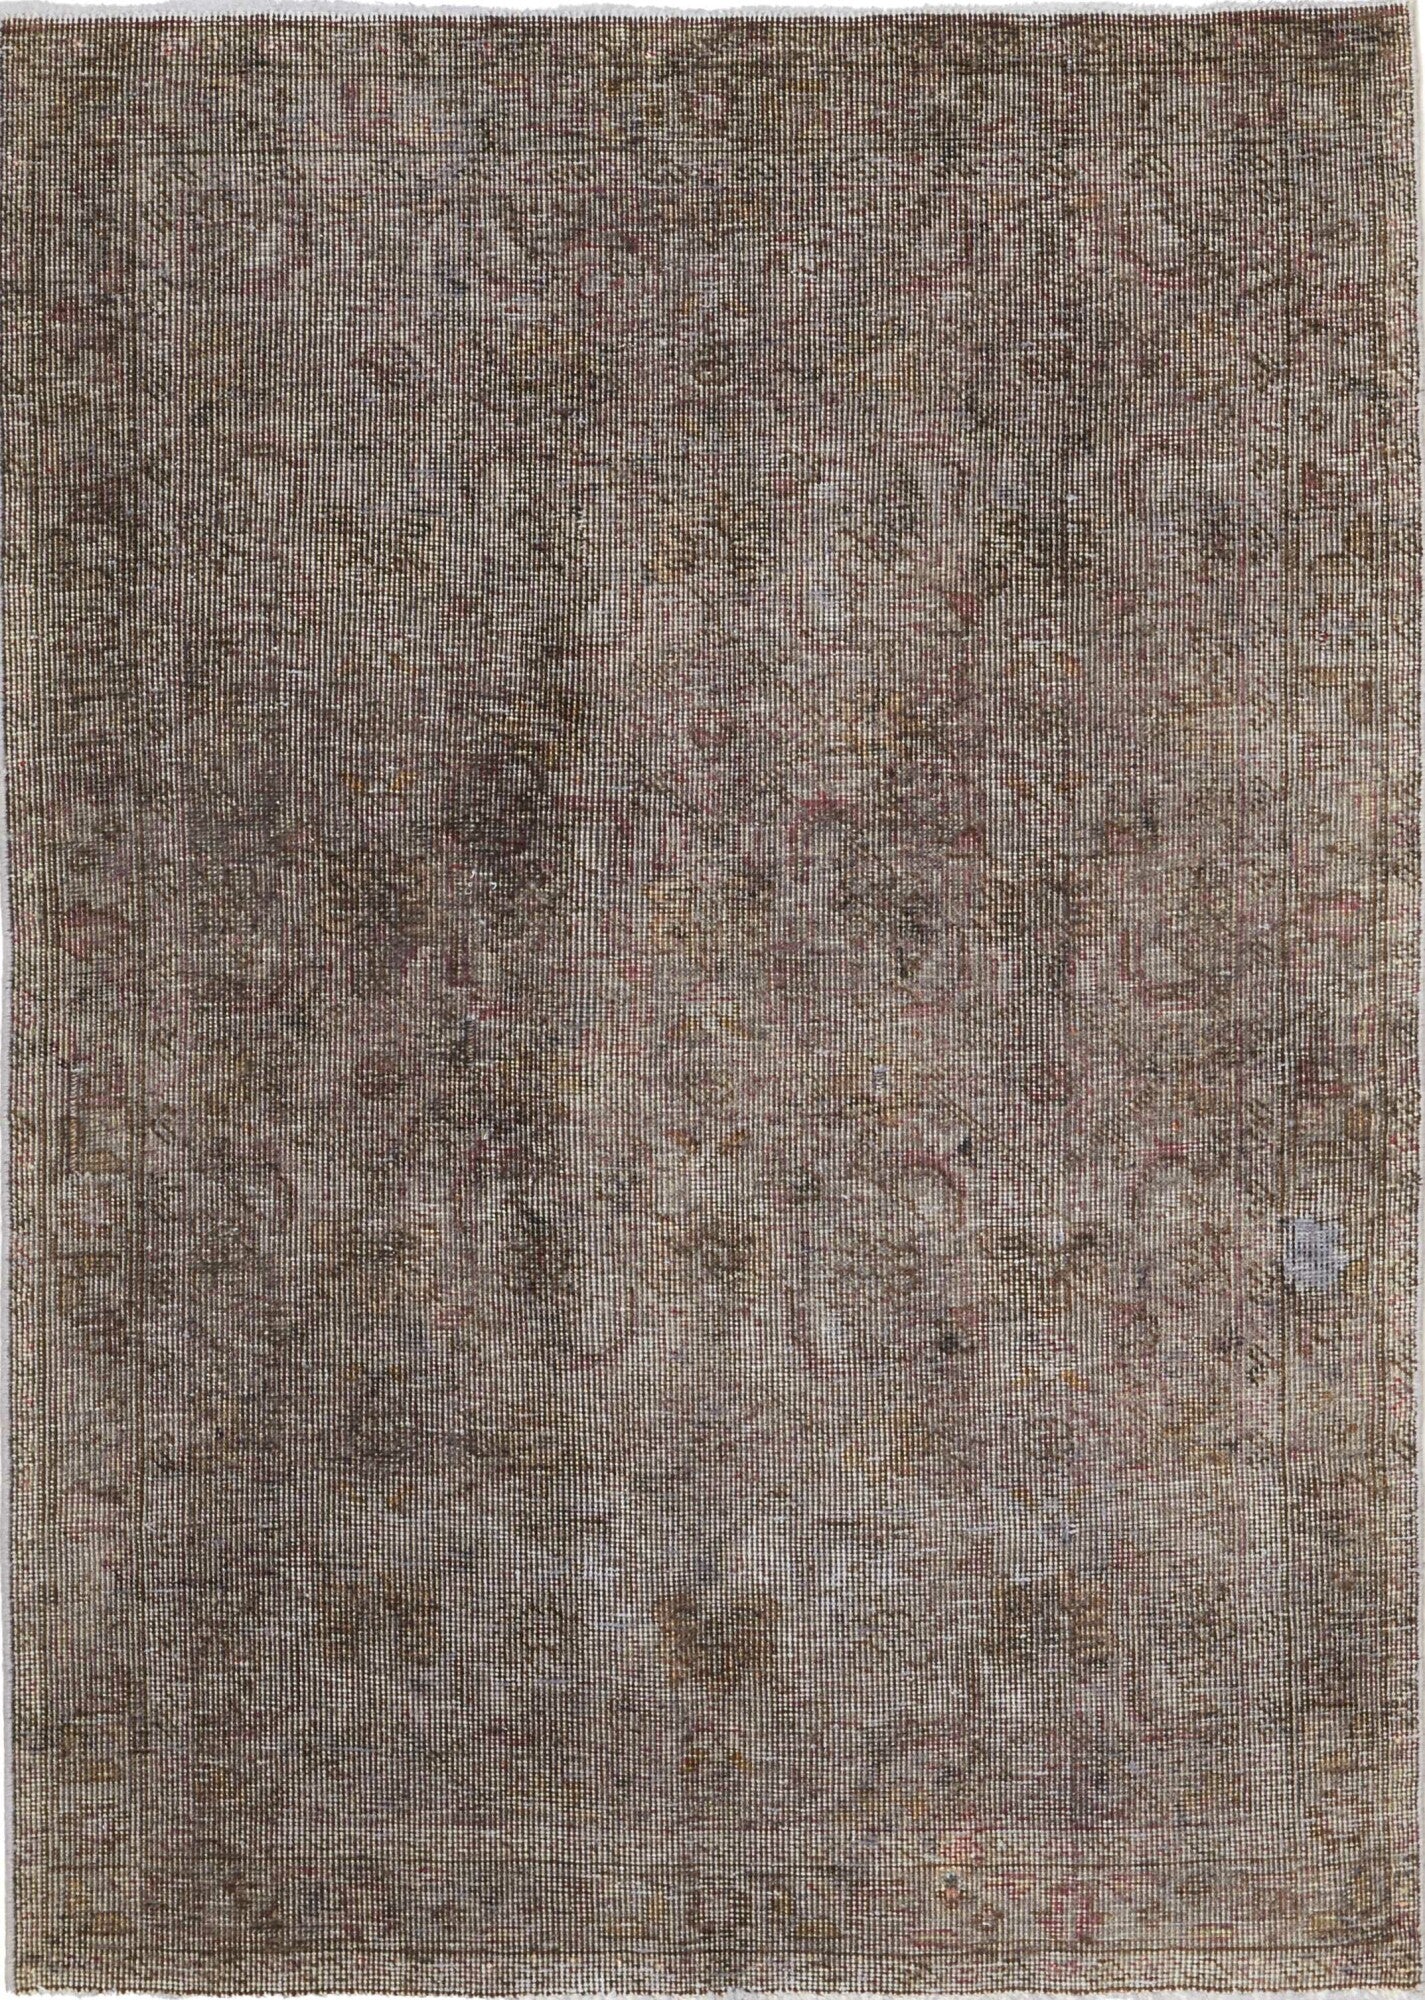 Täbriz | 137 cm x 97 cm | Nr. 12-446985